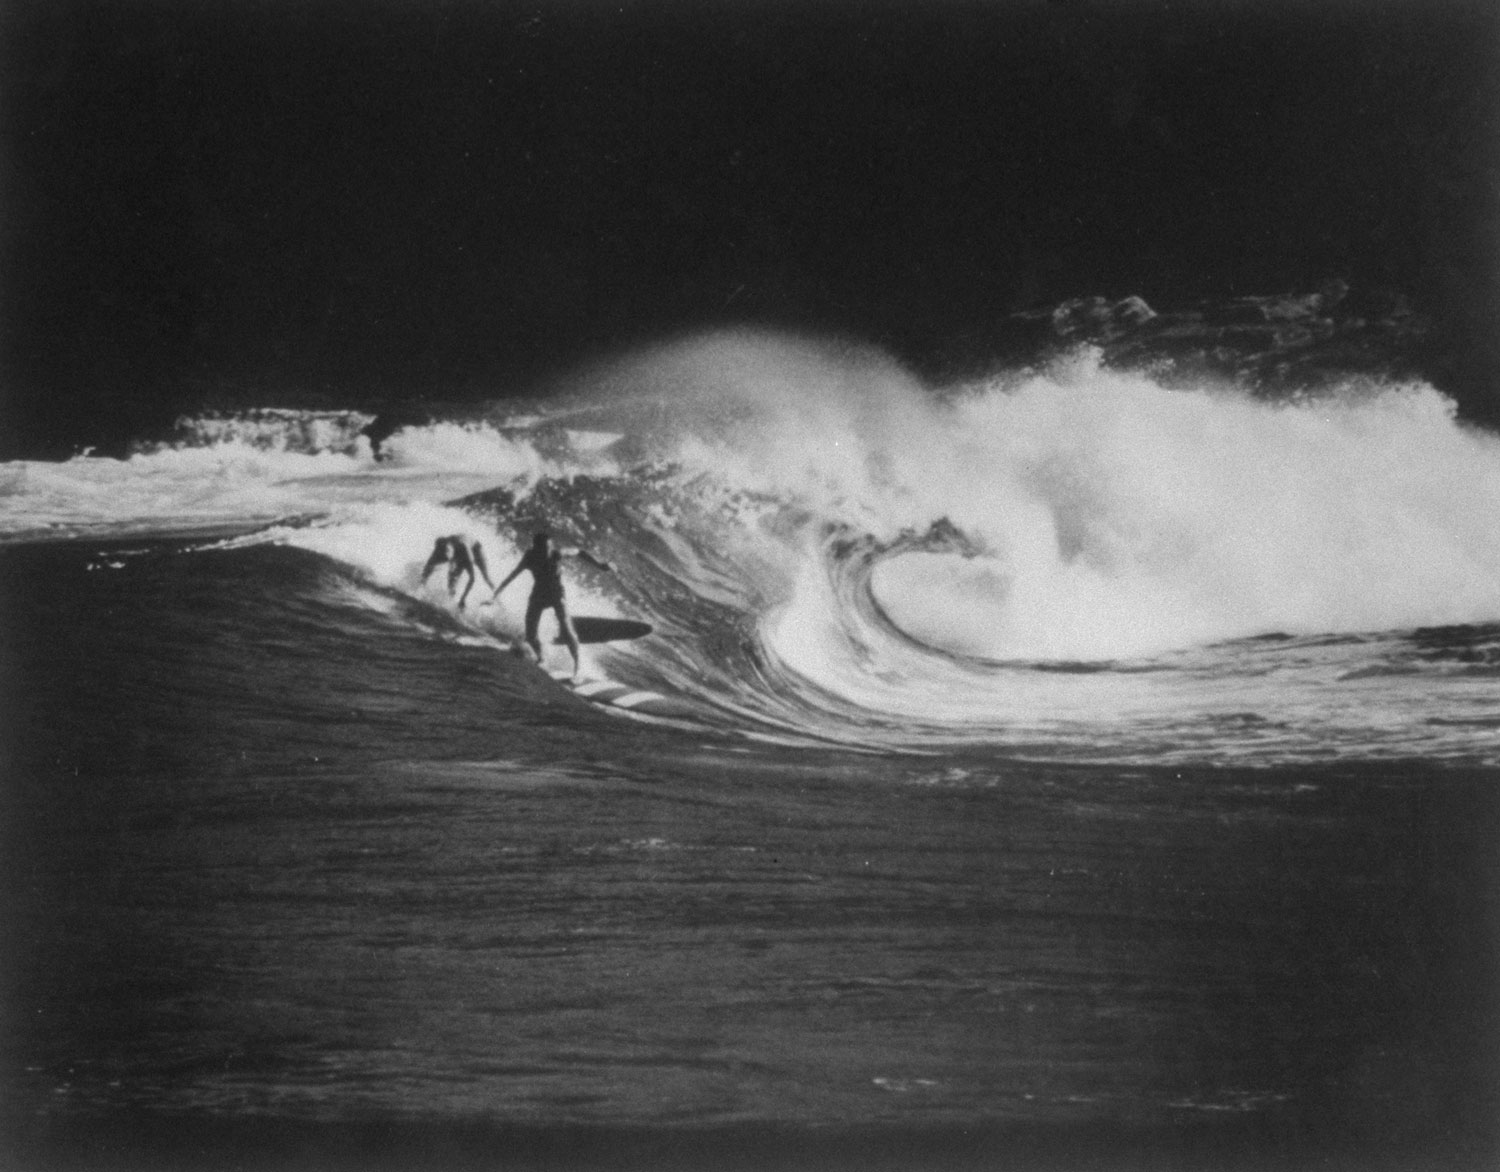 Surfing, Australia, 1958